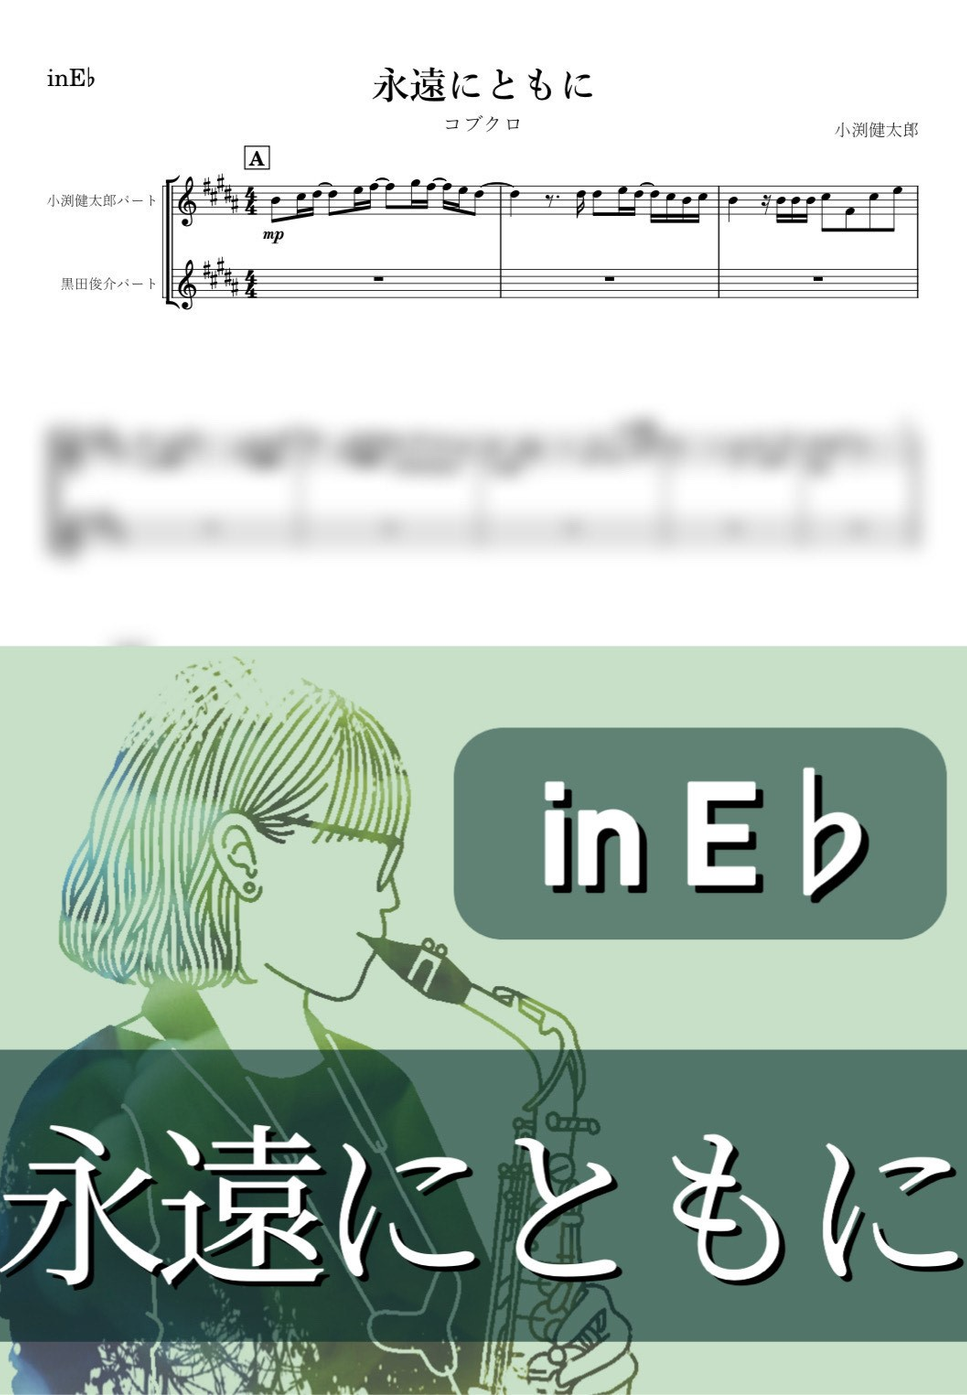 コブクロ - 永遠にともに (E♭) by kanamusic